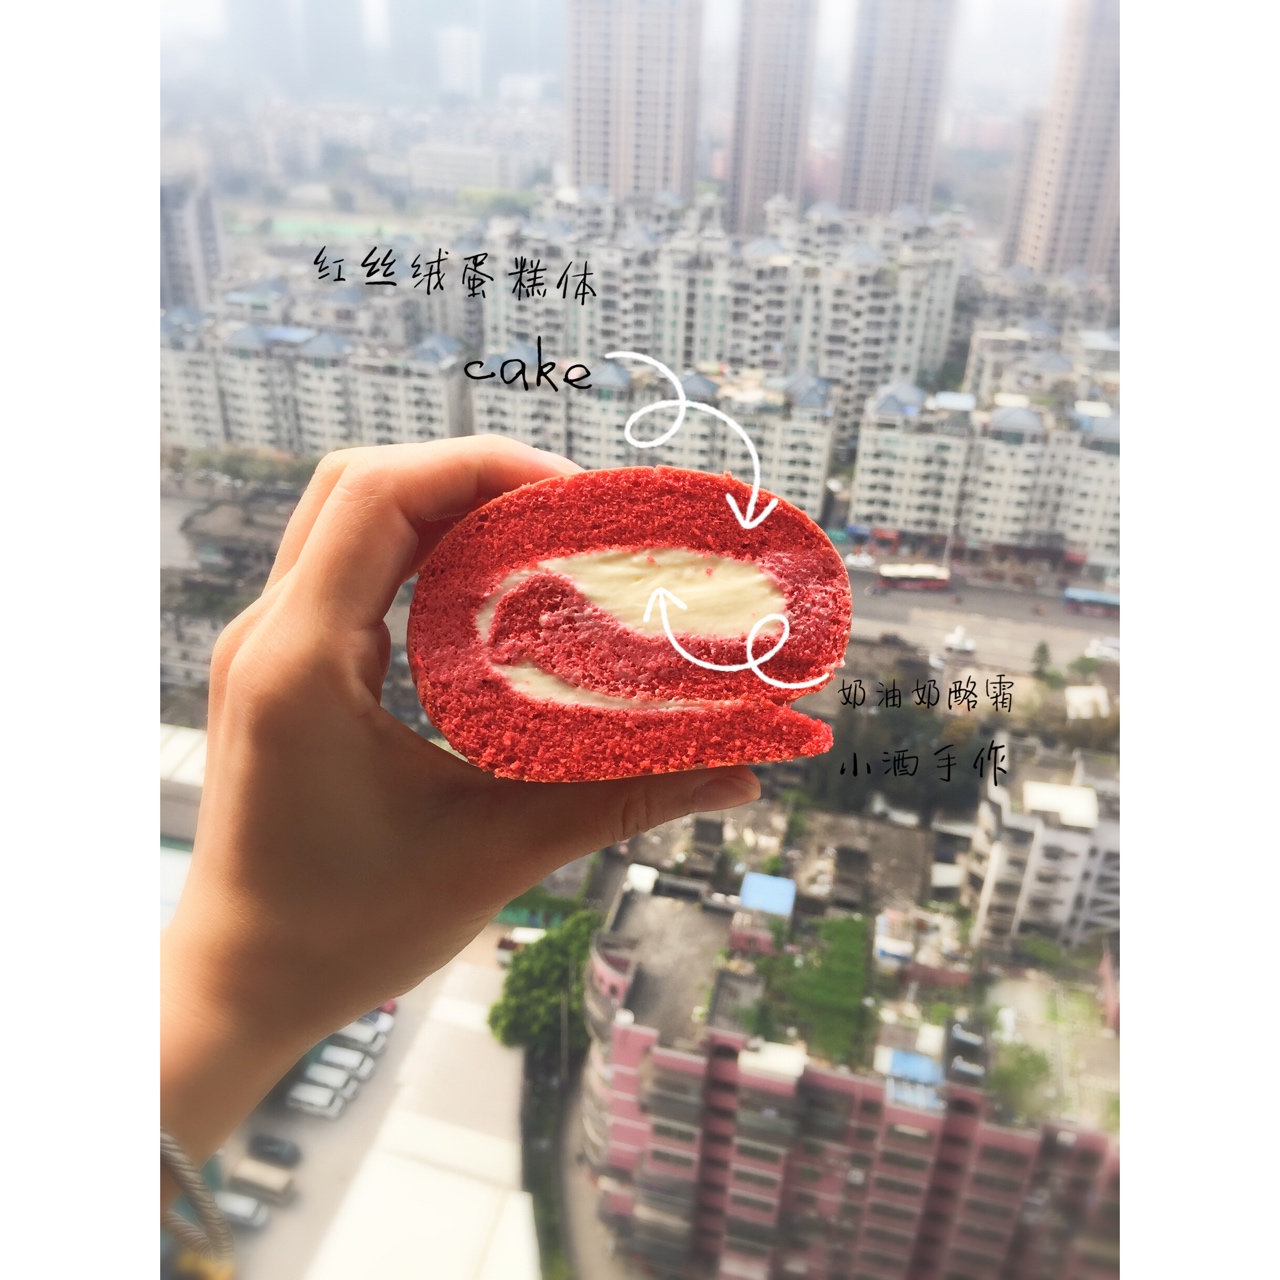 红丝绒戚风蛋糕-精华液版